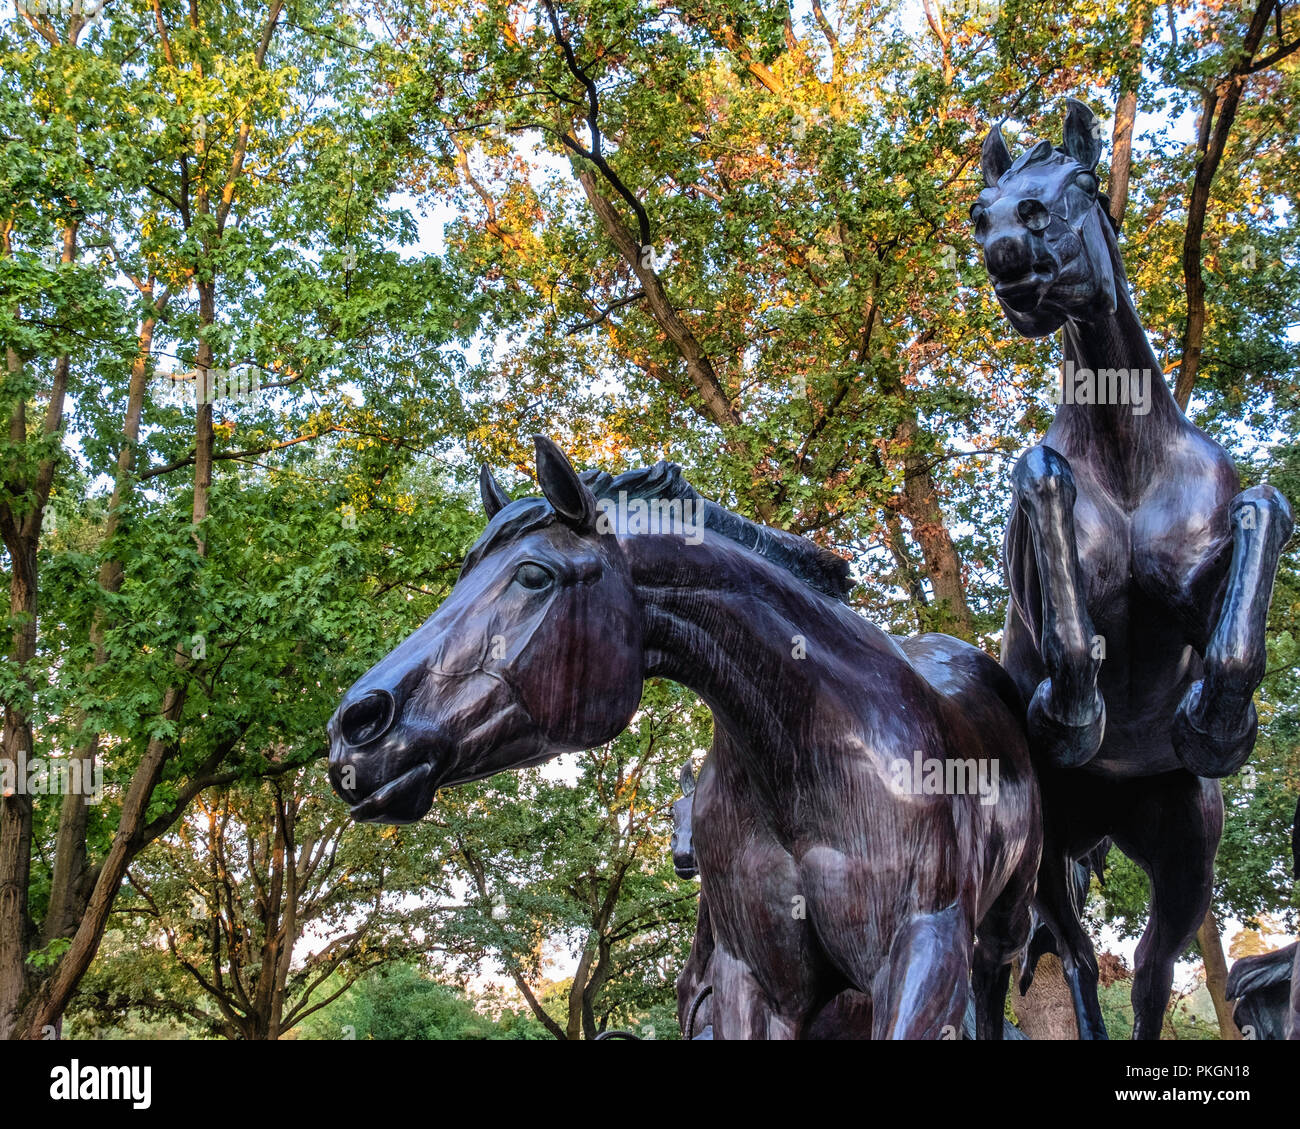 Berlino,Dahlem. La scultura in bronzo di cinque cavalli selvaggi saltando resti del muro di Berlino. Regalo da STATI UNITI D'AMERICA PER FDR commemora il giorno in cui il muro è caduto. Foto Stock